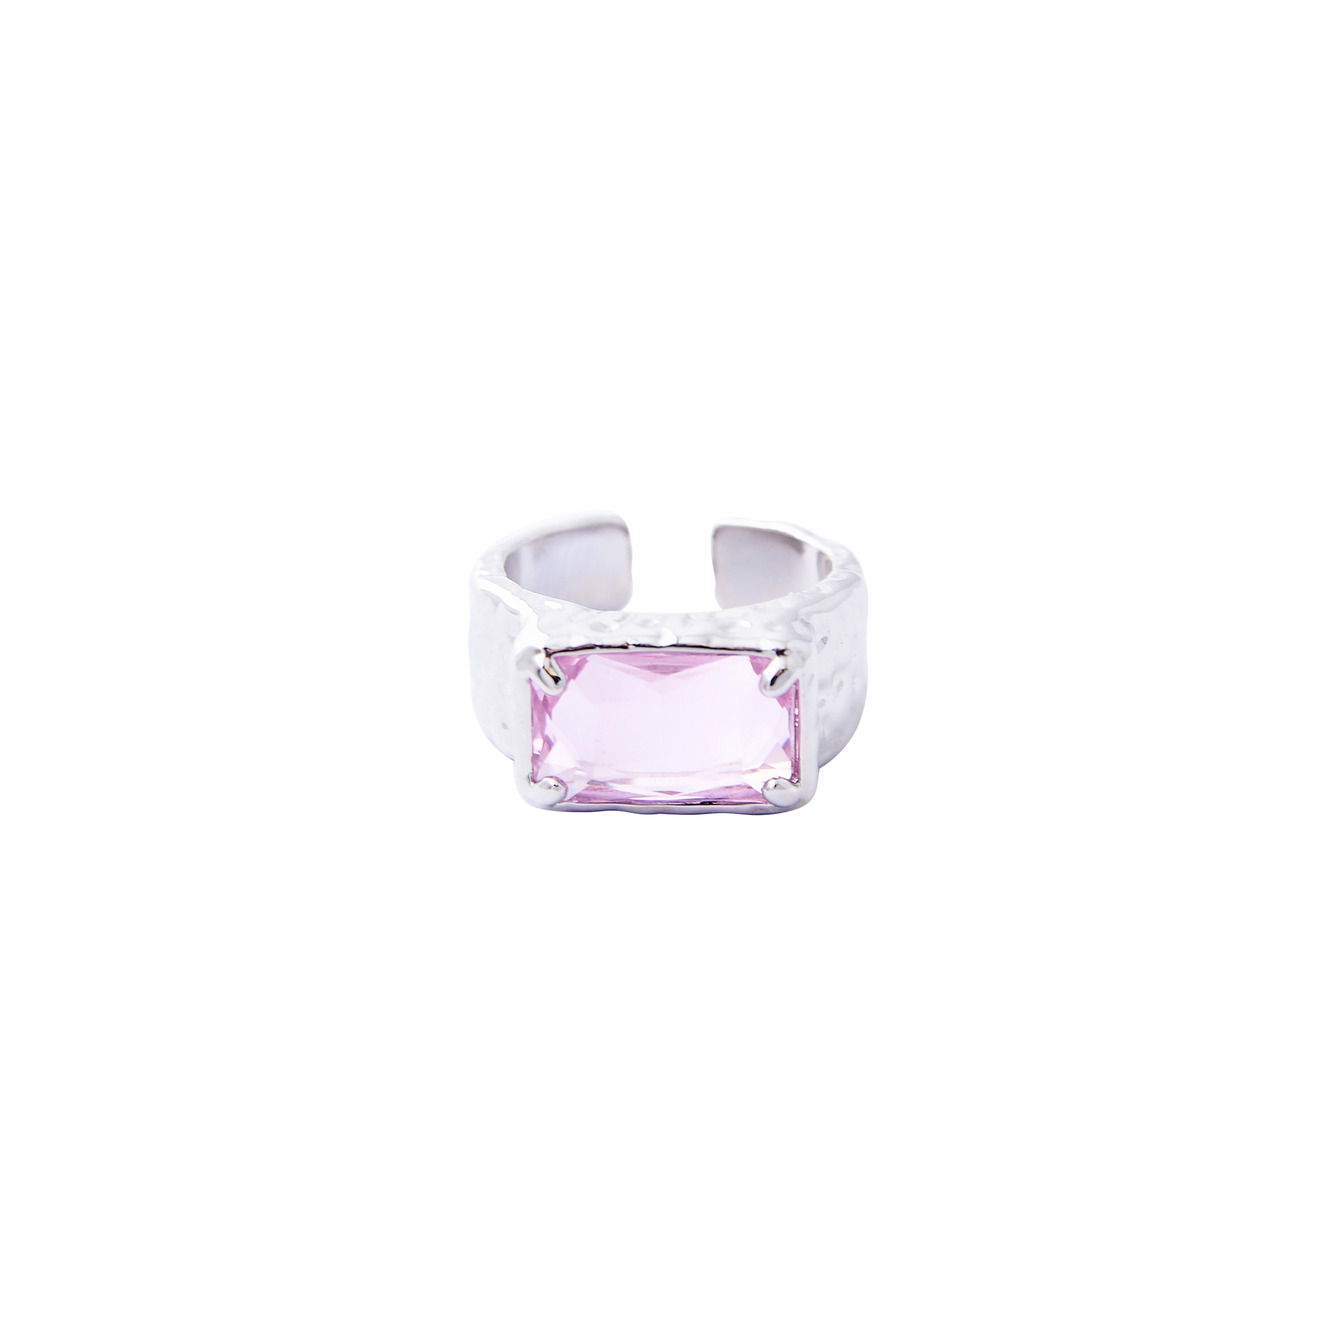 Herald Percy Серебристое кольцо с крупным розовым кристаллом herald percy серебристое фигурное кольцо с черным сердцем